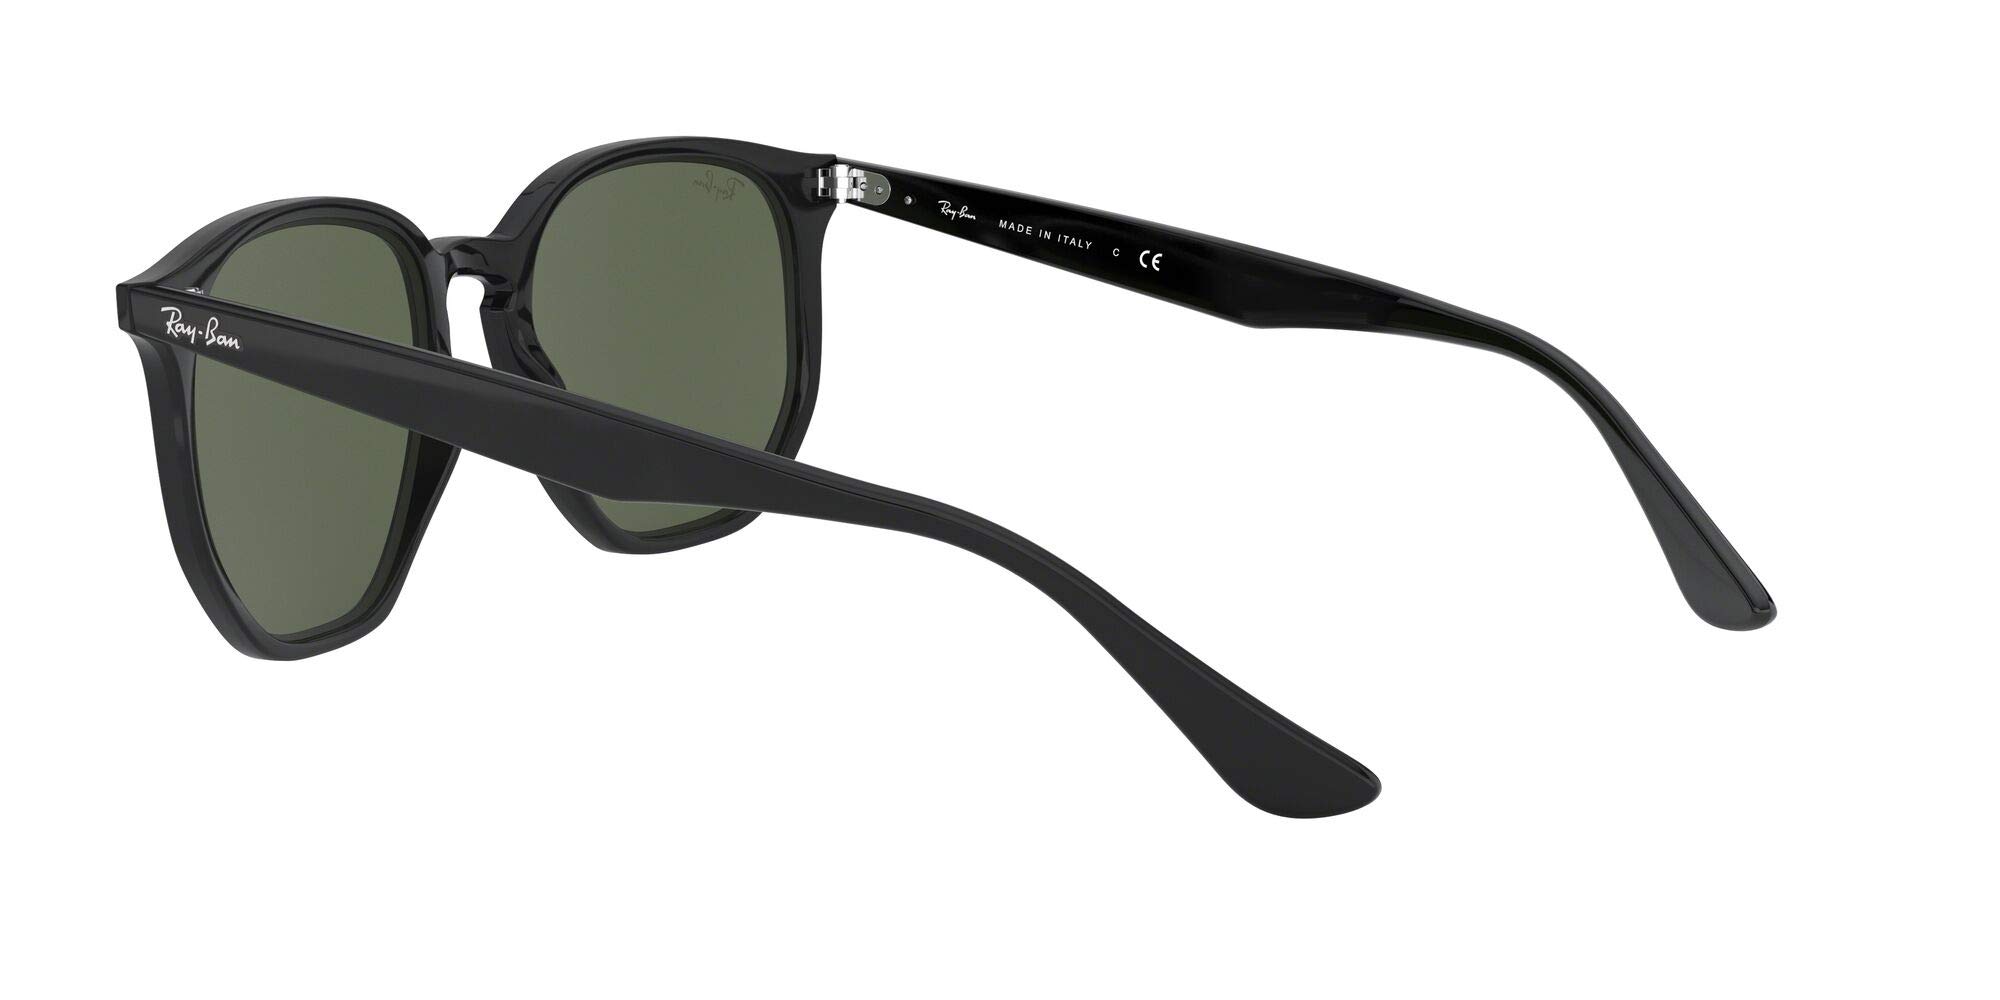 Mua Ray-Ban RB4306 Hexagonal Sunglasses trên Amazon Mỹ chính hãng 2023 |  Giaonhan247